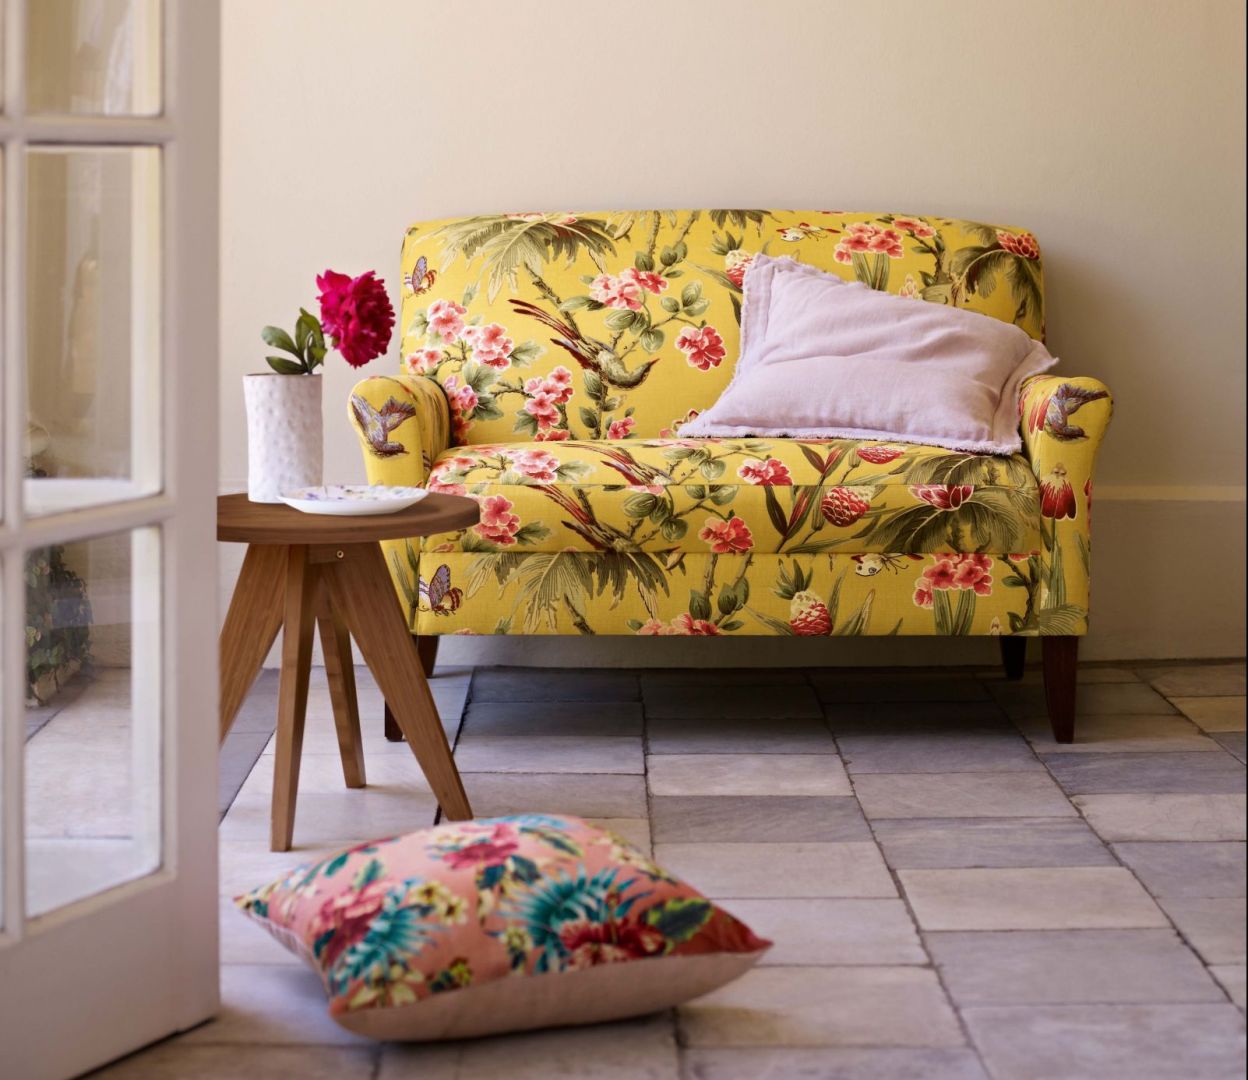 Sofa w żywych kolorach z motywem roślinnym. Fot. MarksSpencer